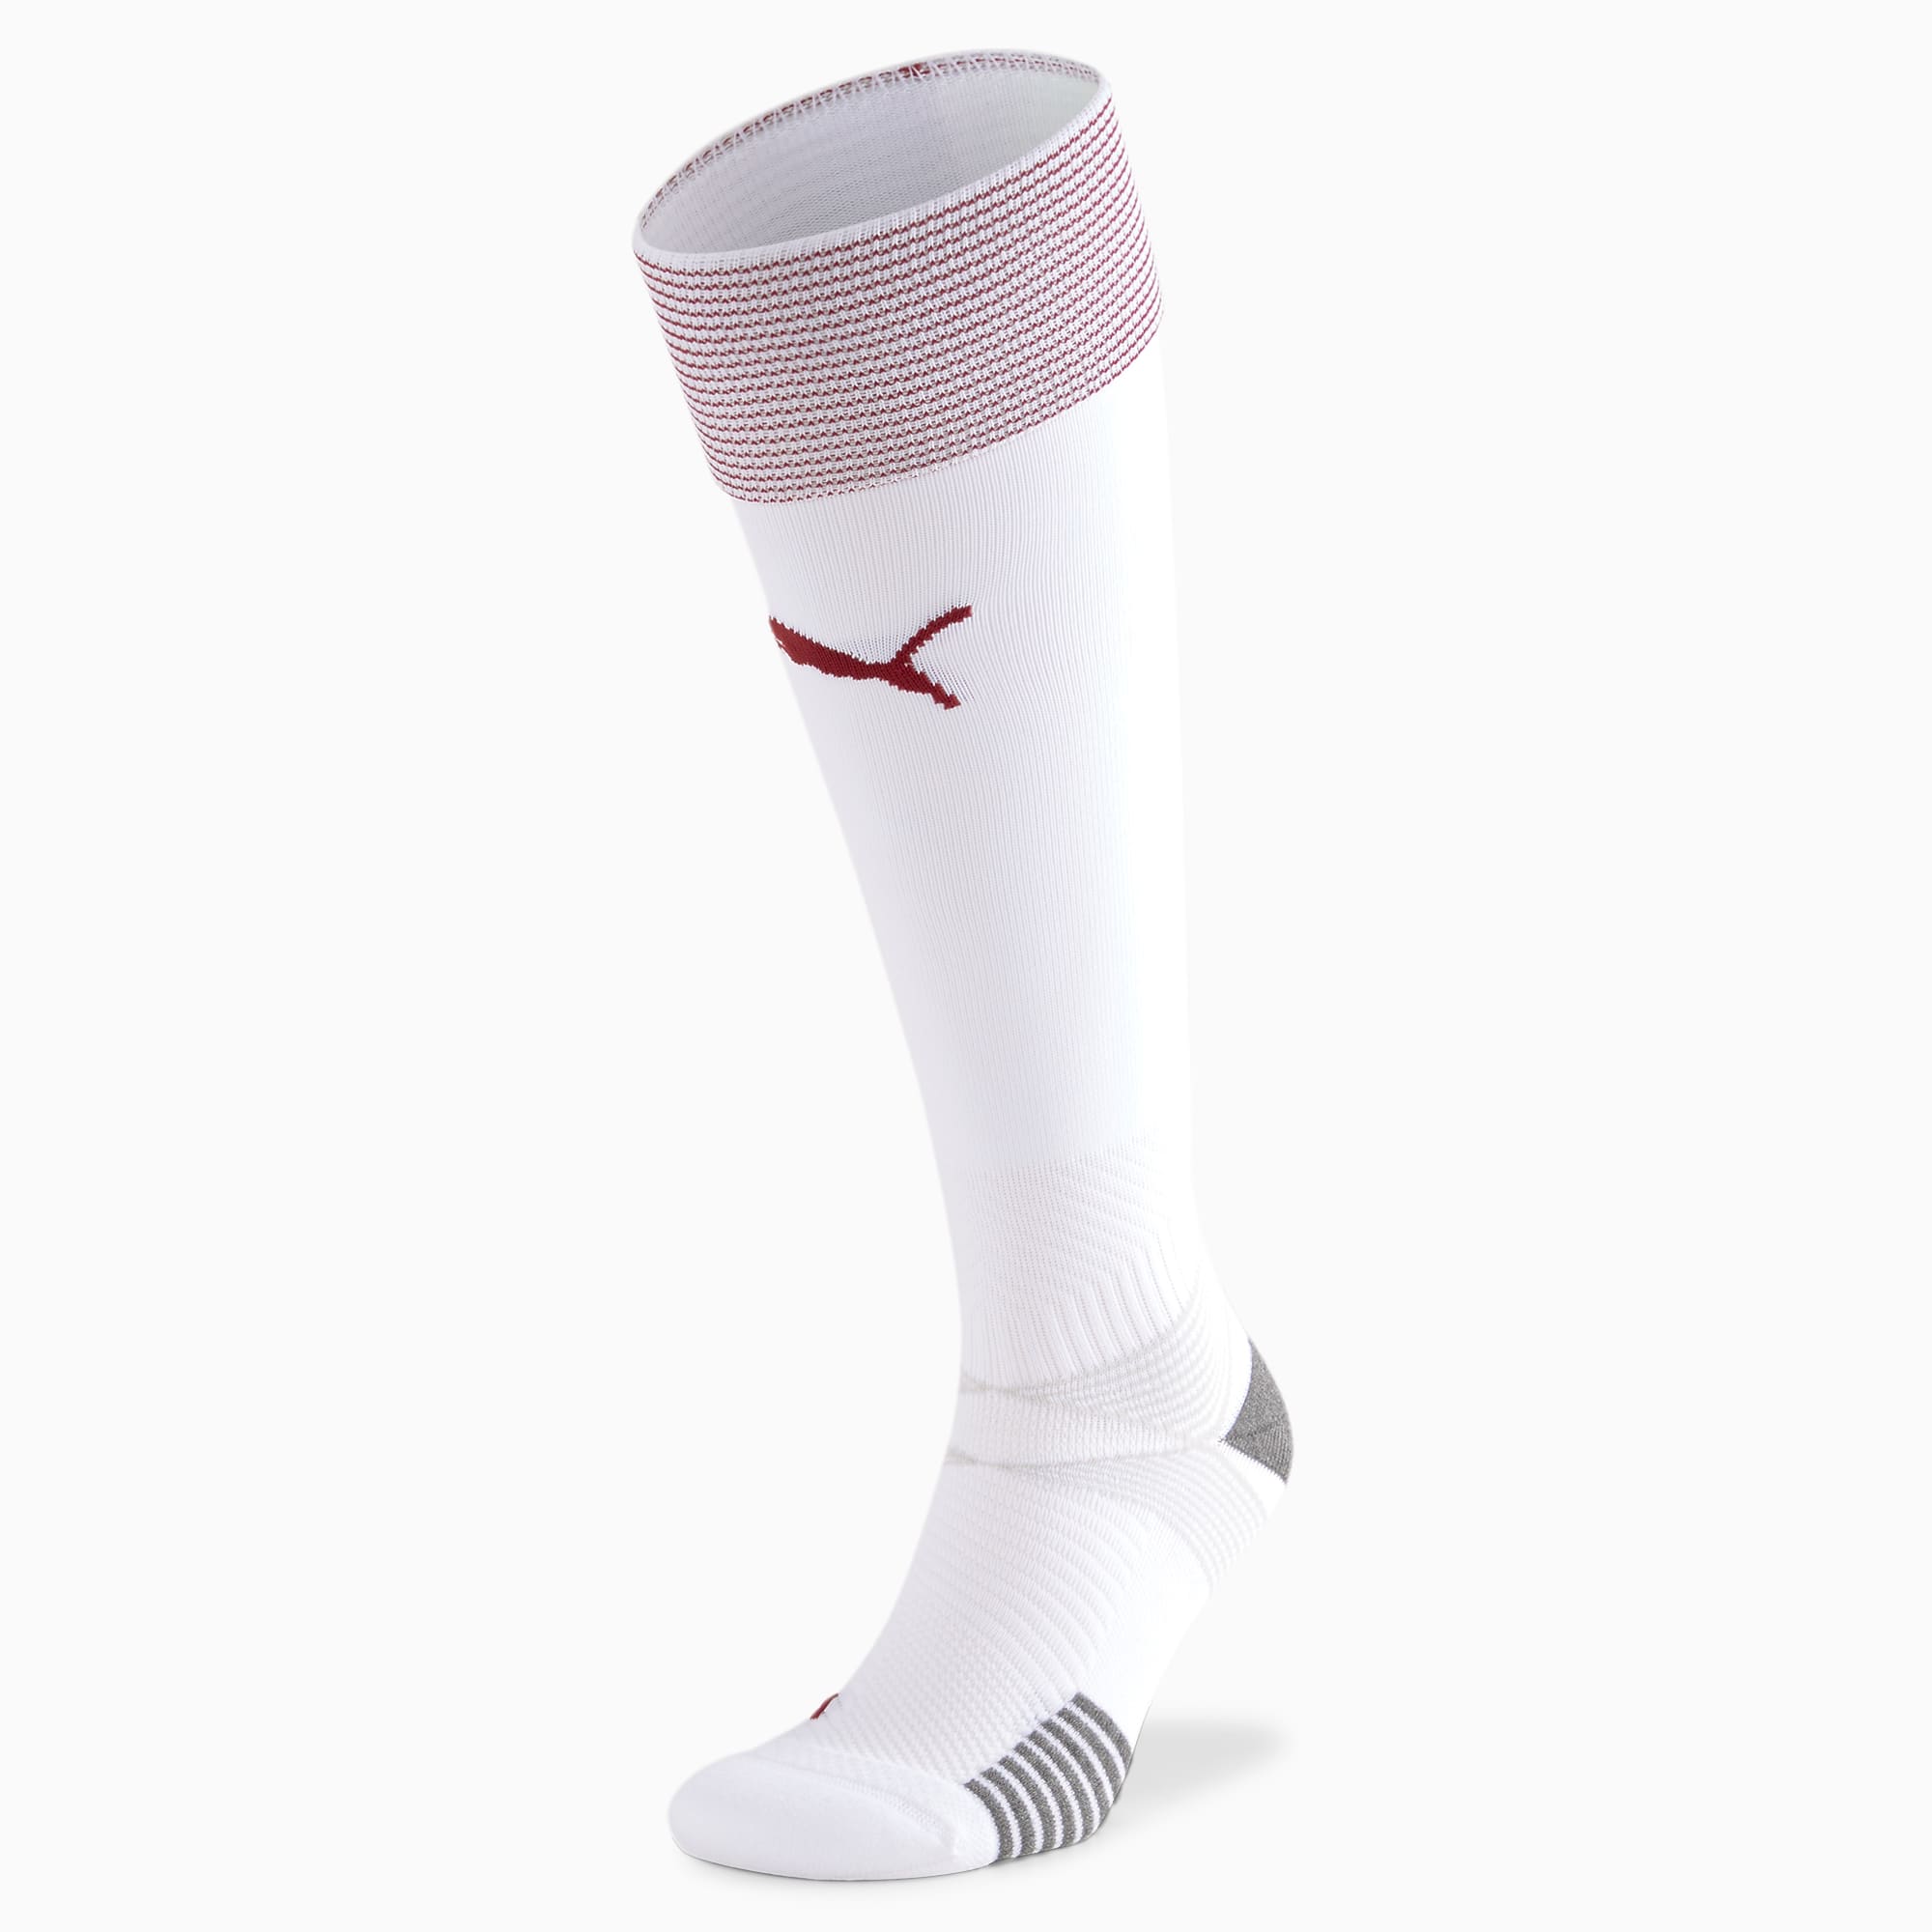 Suisse Away Replica sokken voor Heren, Wit/Rood, Maat 31-34 | PUMA